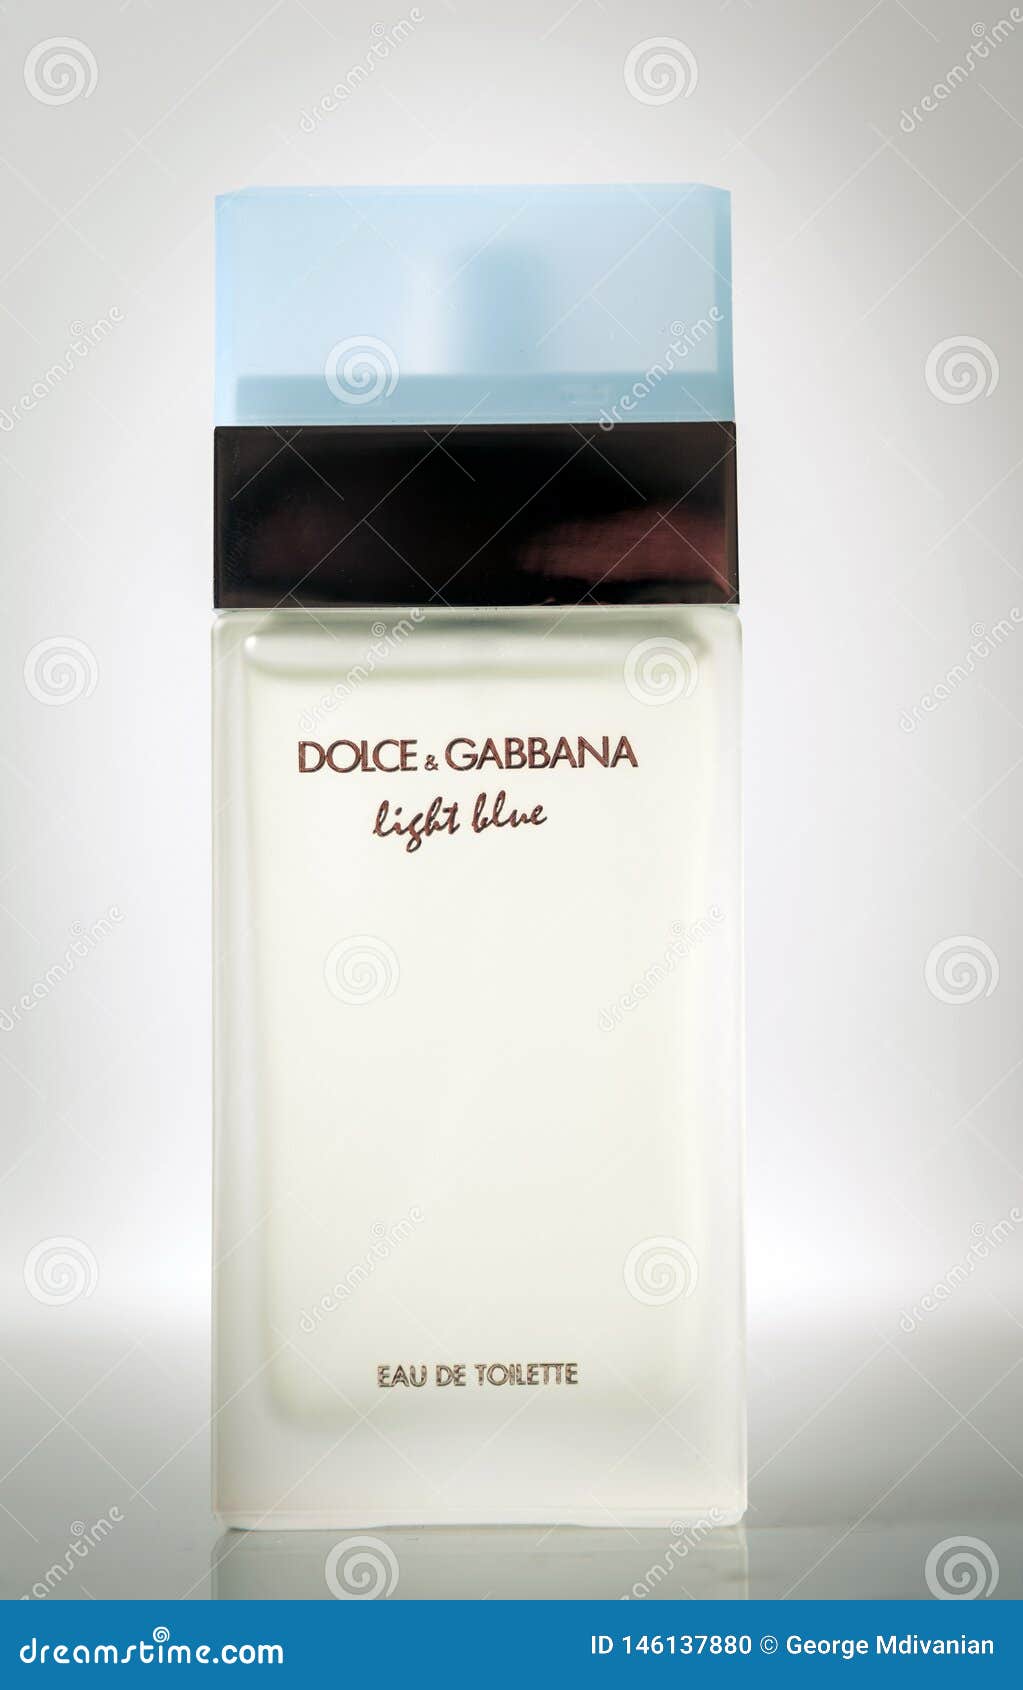 dolce gabbana 2019 perfume